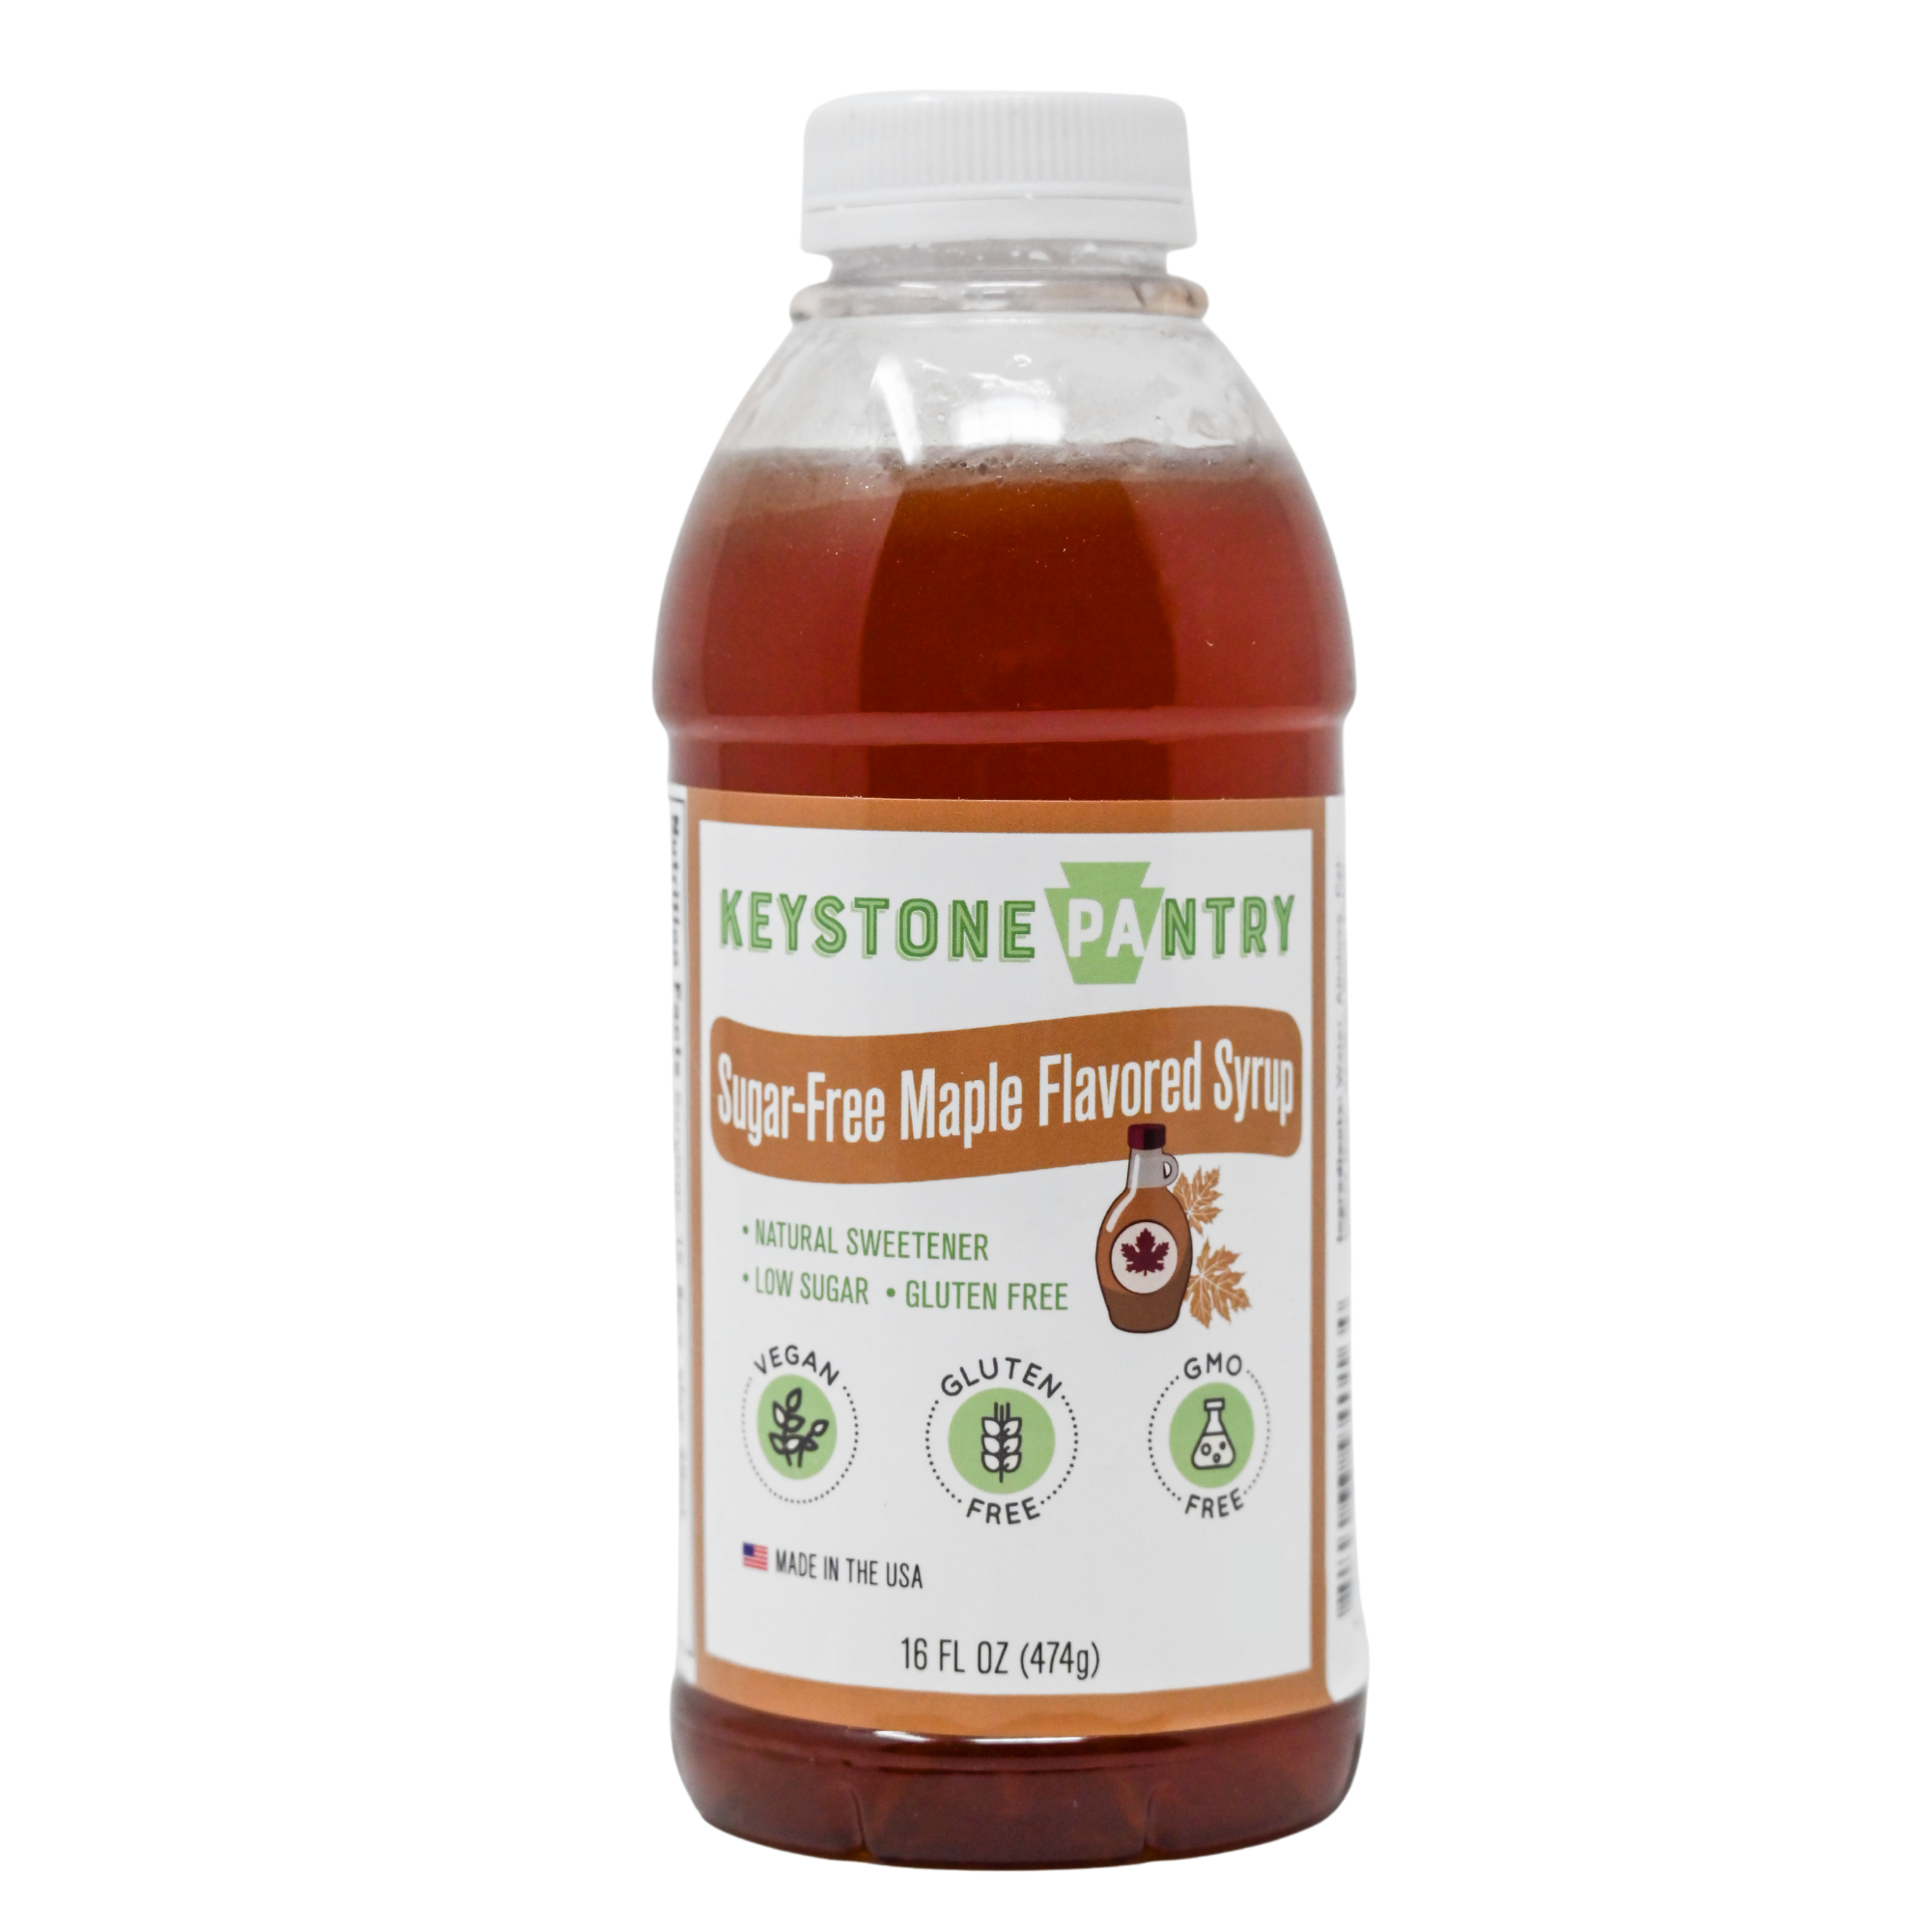 Keystone Pantry Sugar-Free Maple Flavored Syrup 1 pint Keto Friendly